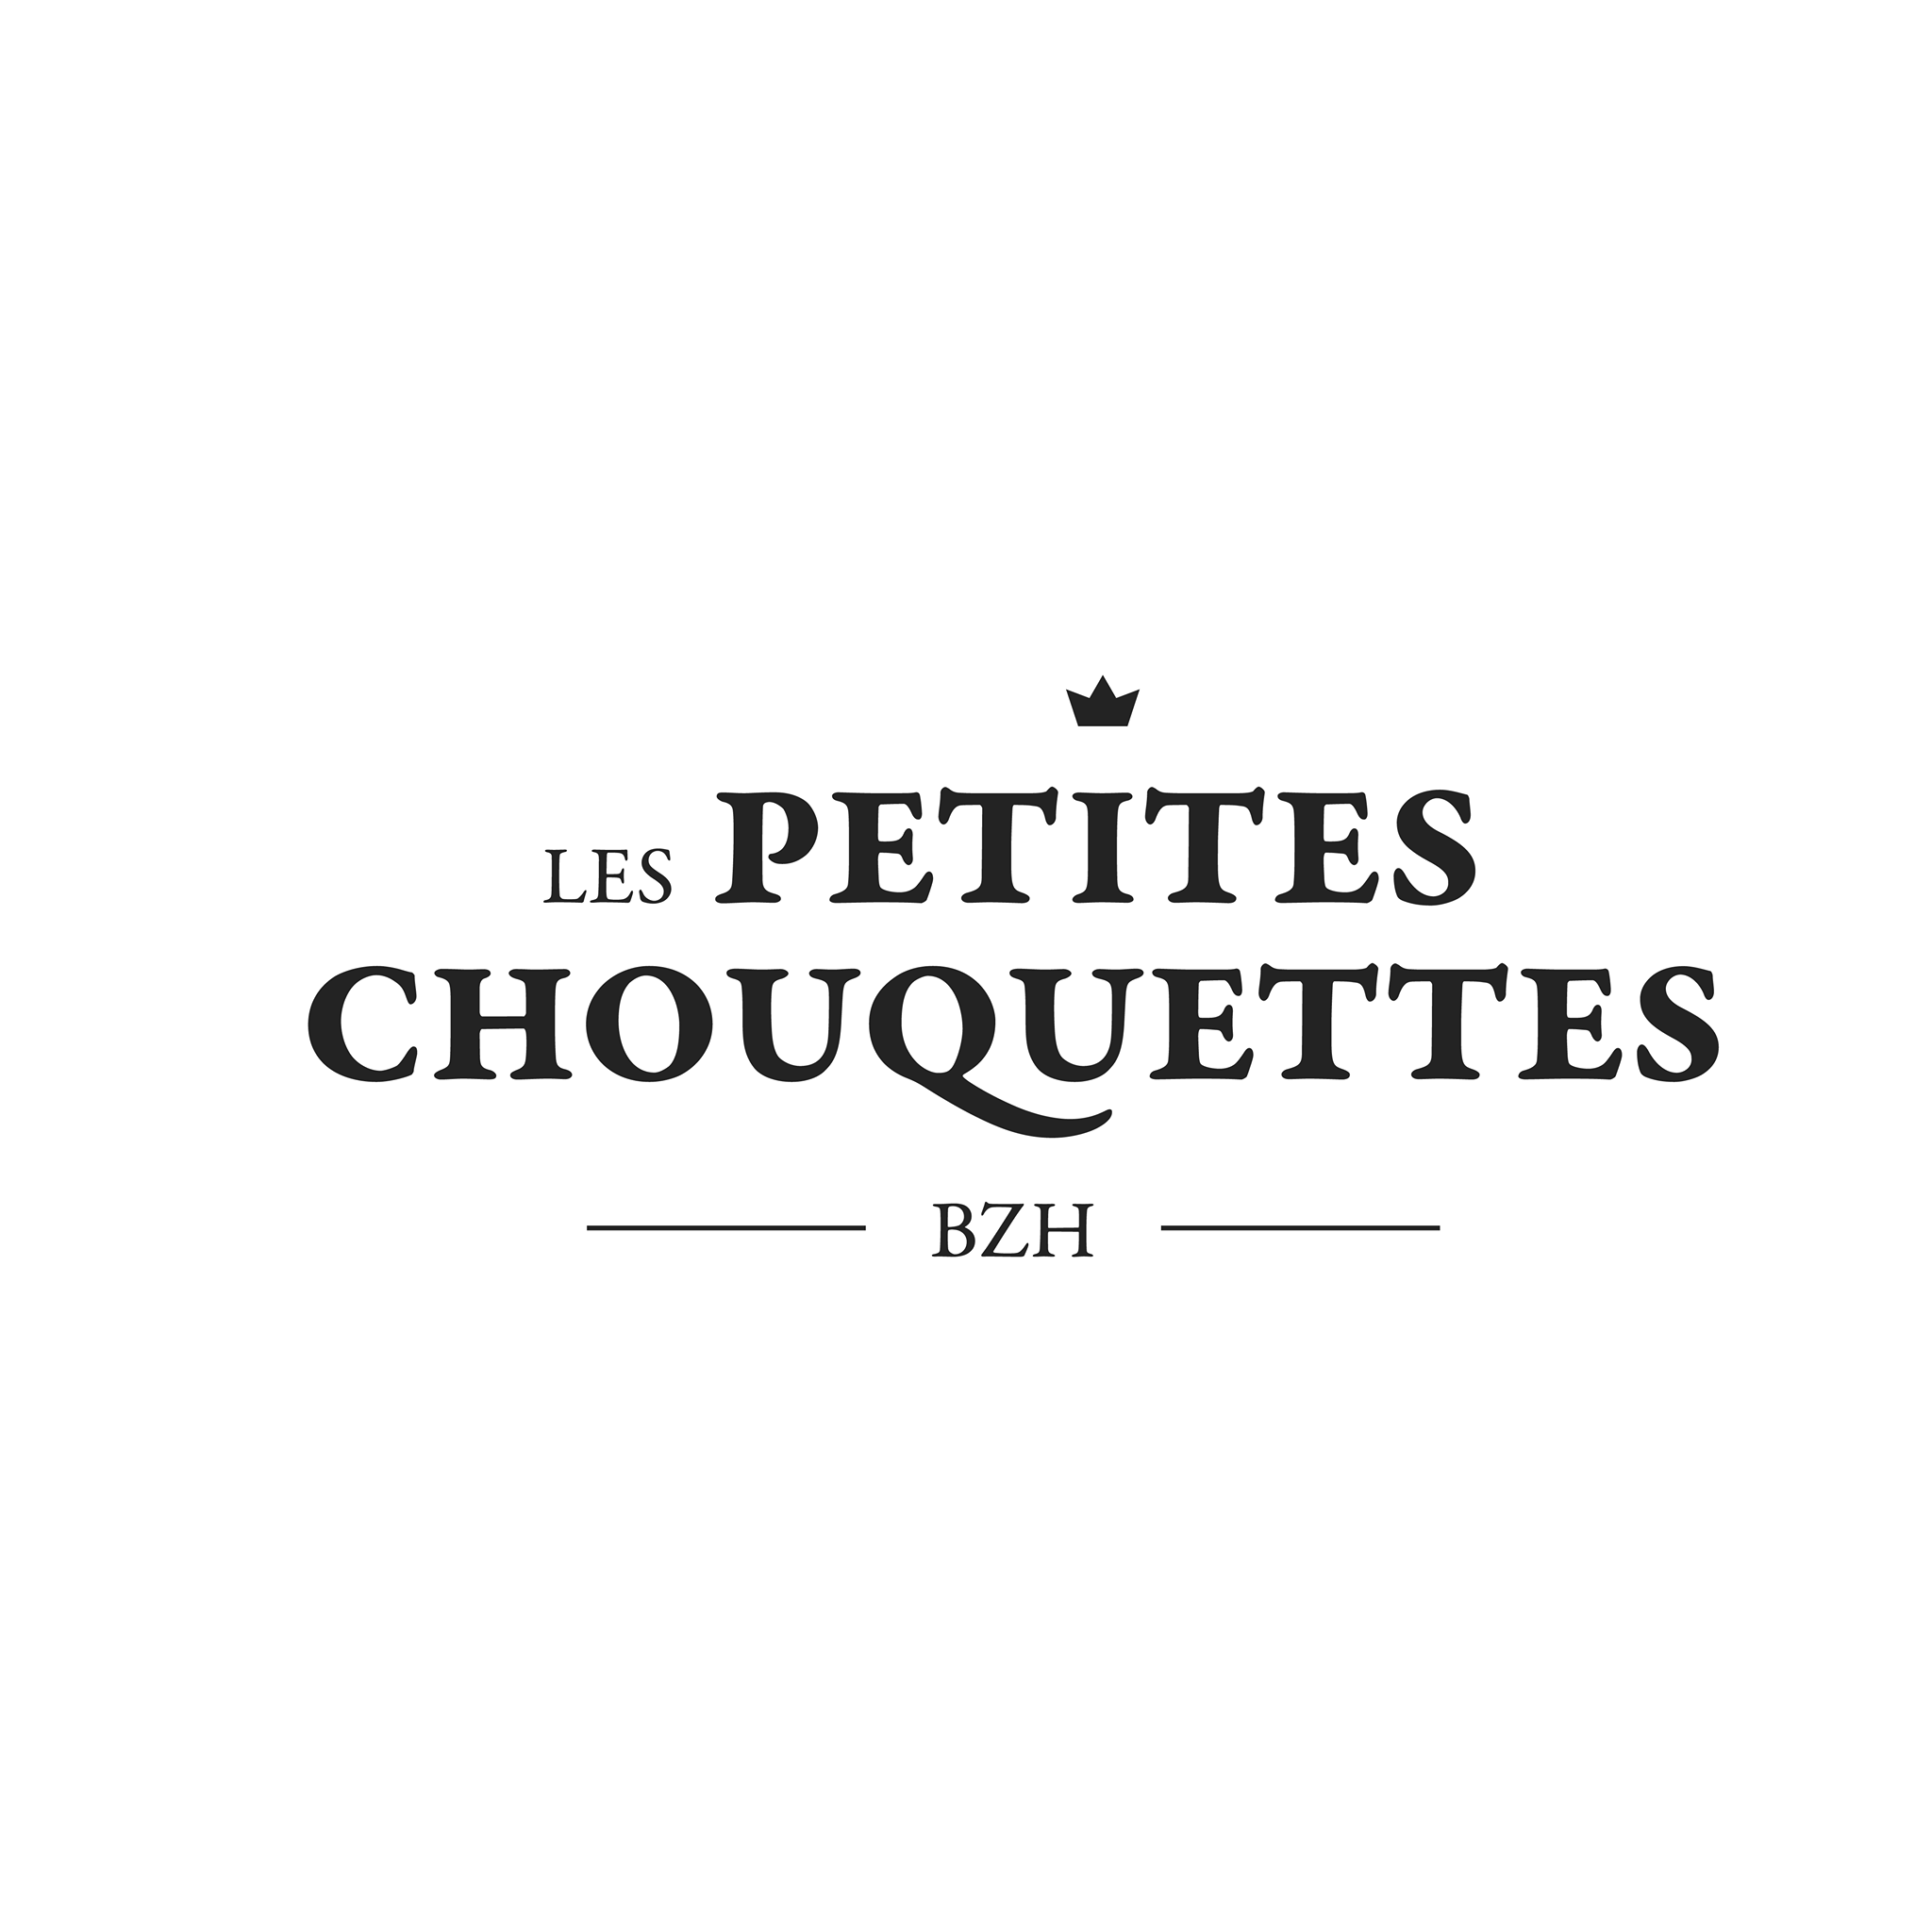 Les Petites Chouquettes logo